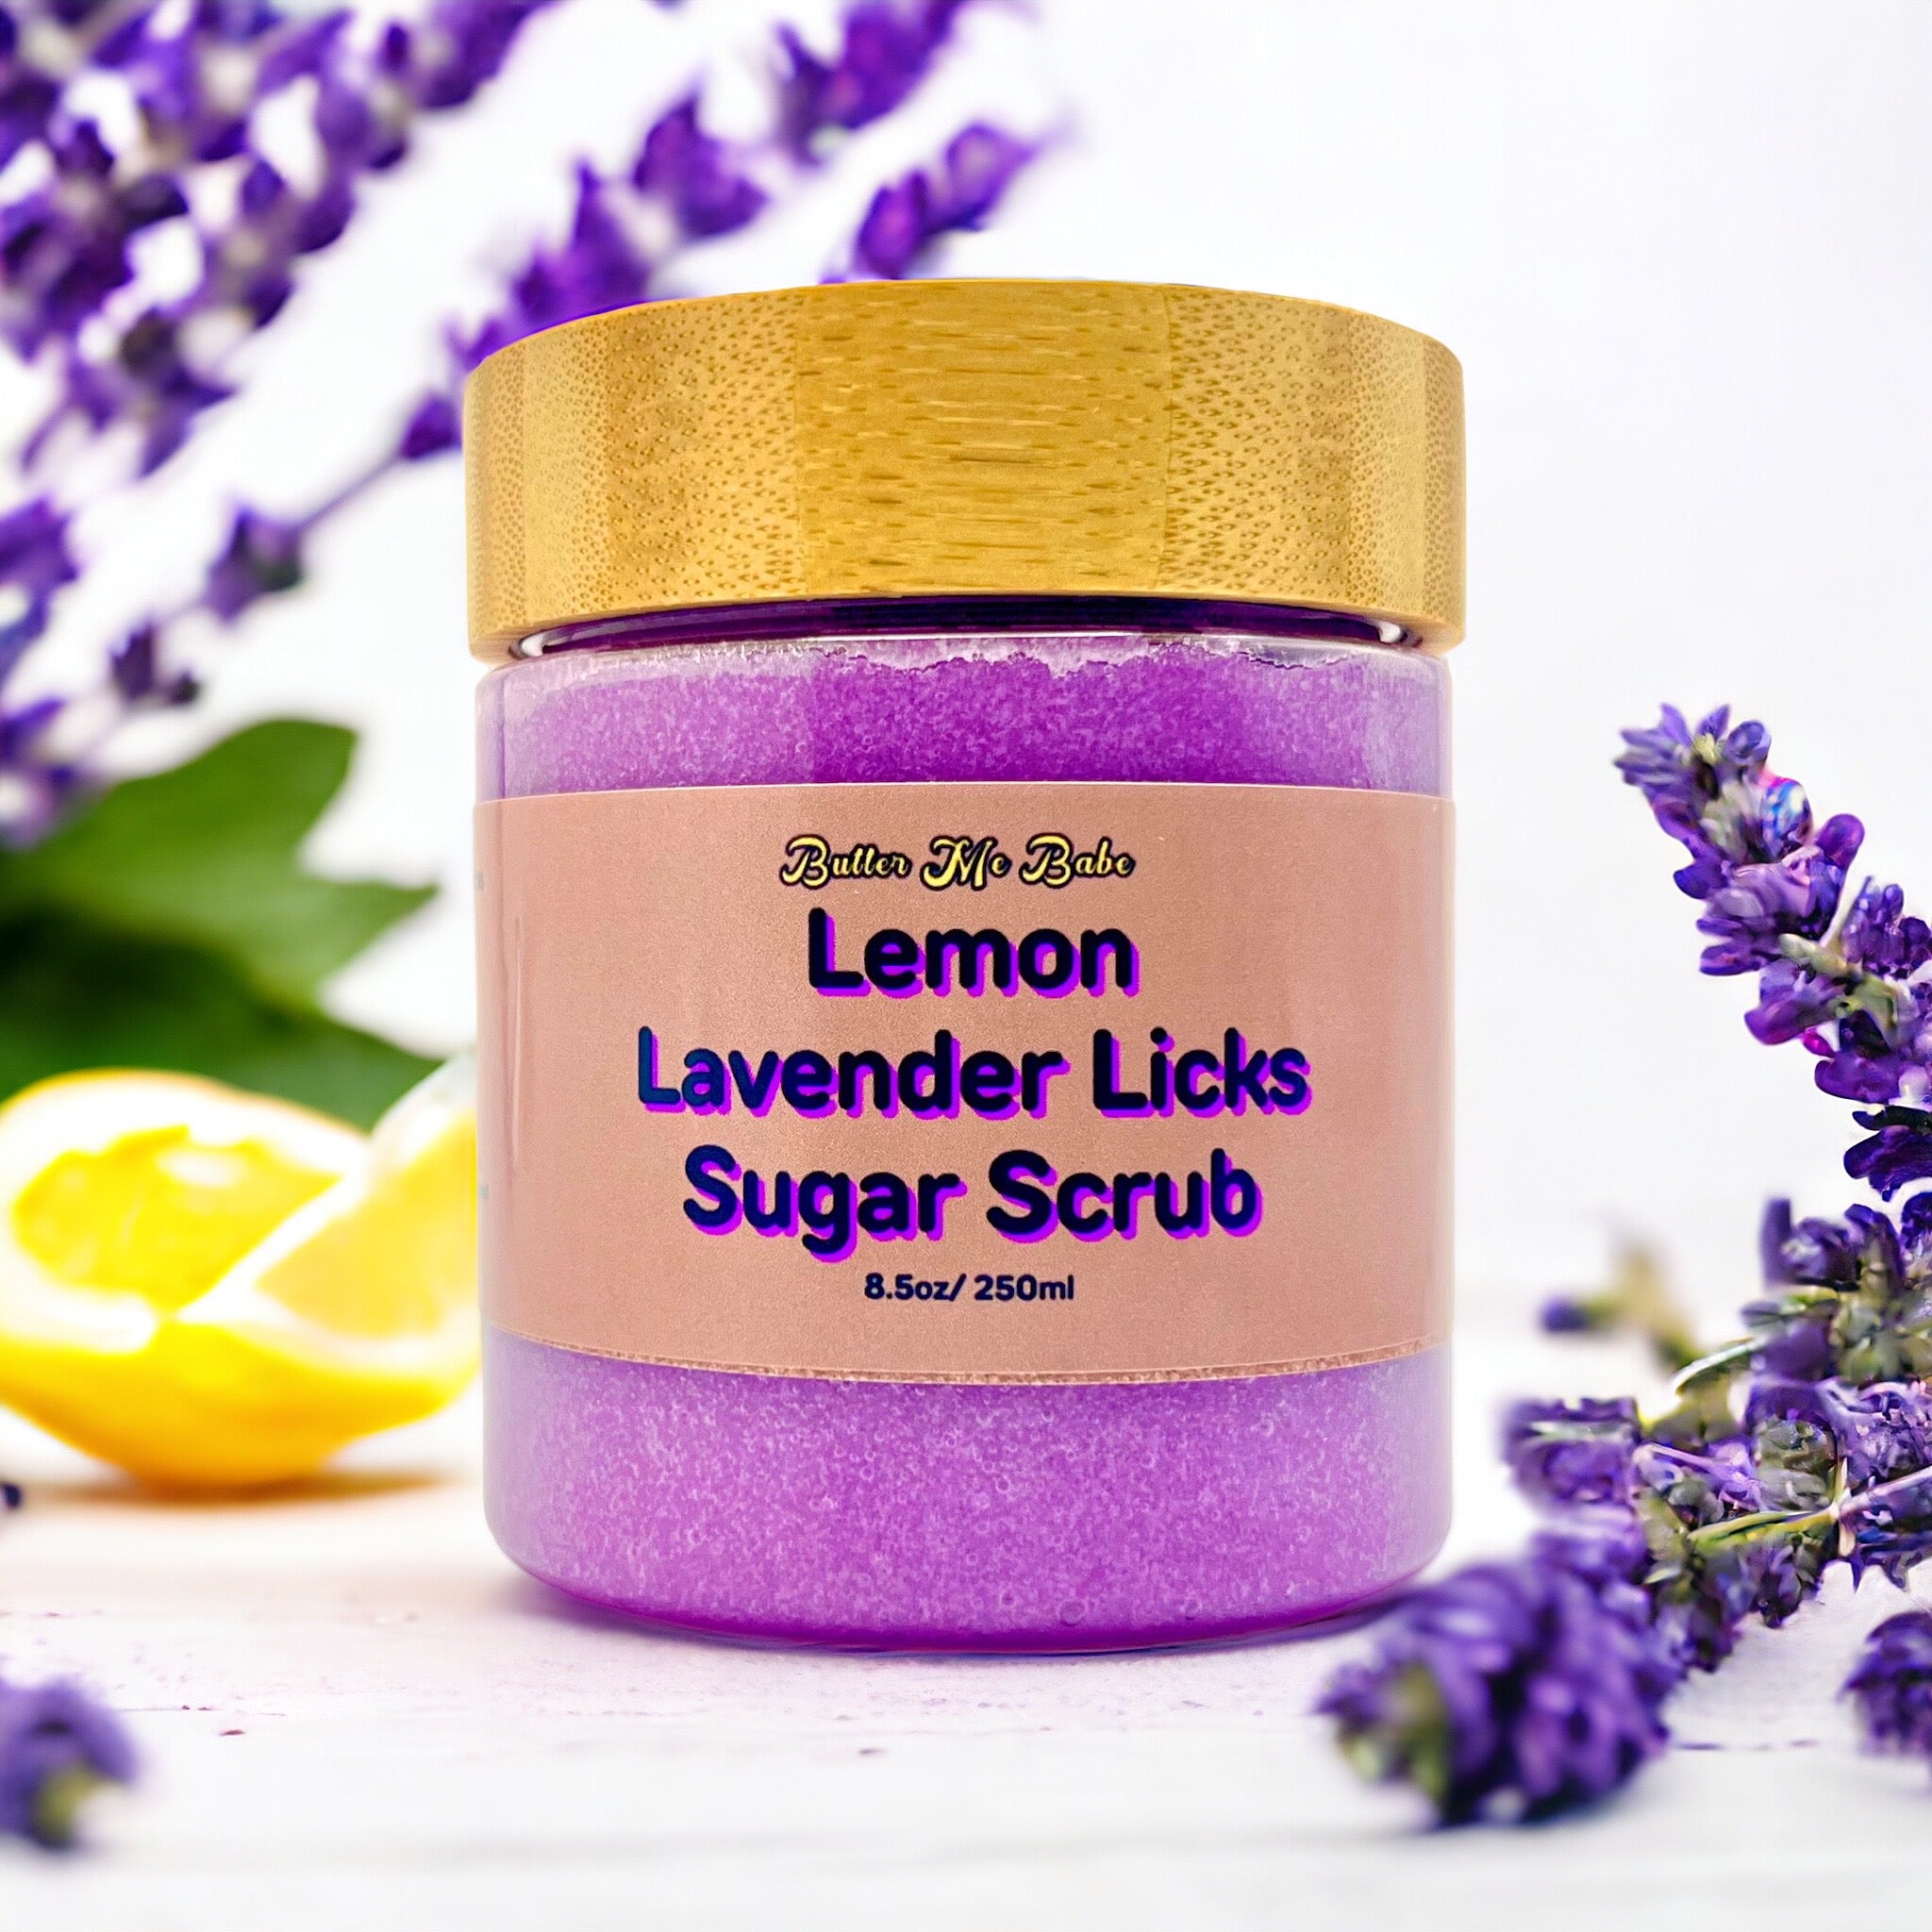 Lemon Lavender Licks Exfoliating Sugar Scrub